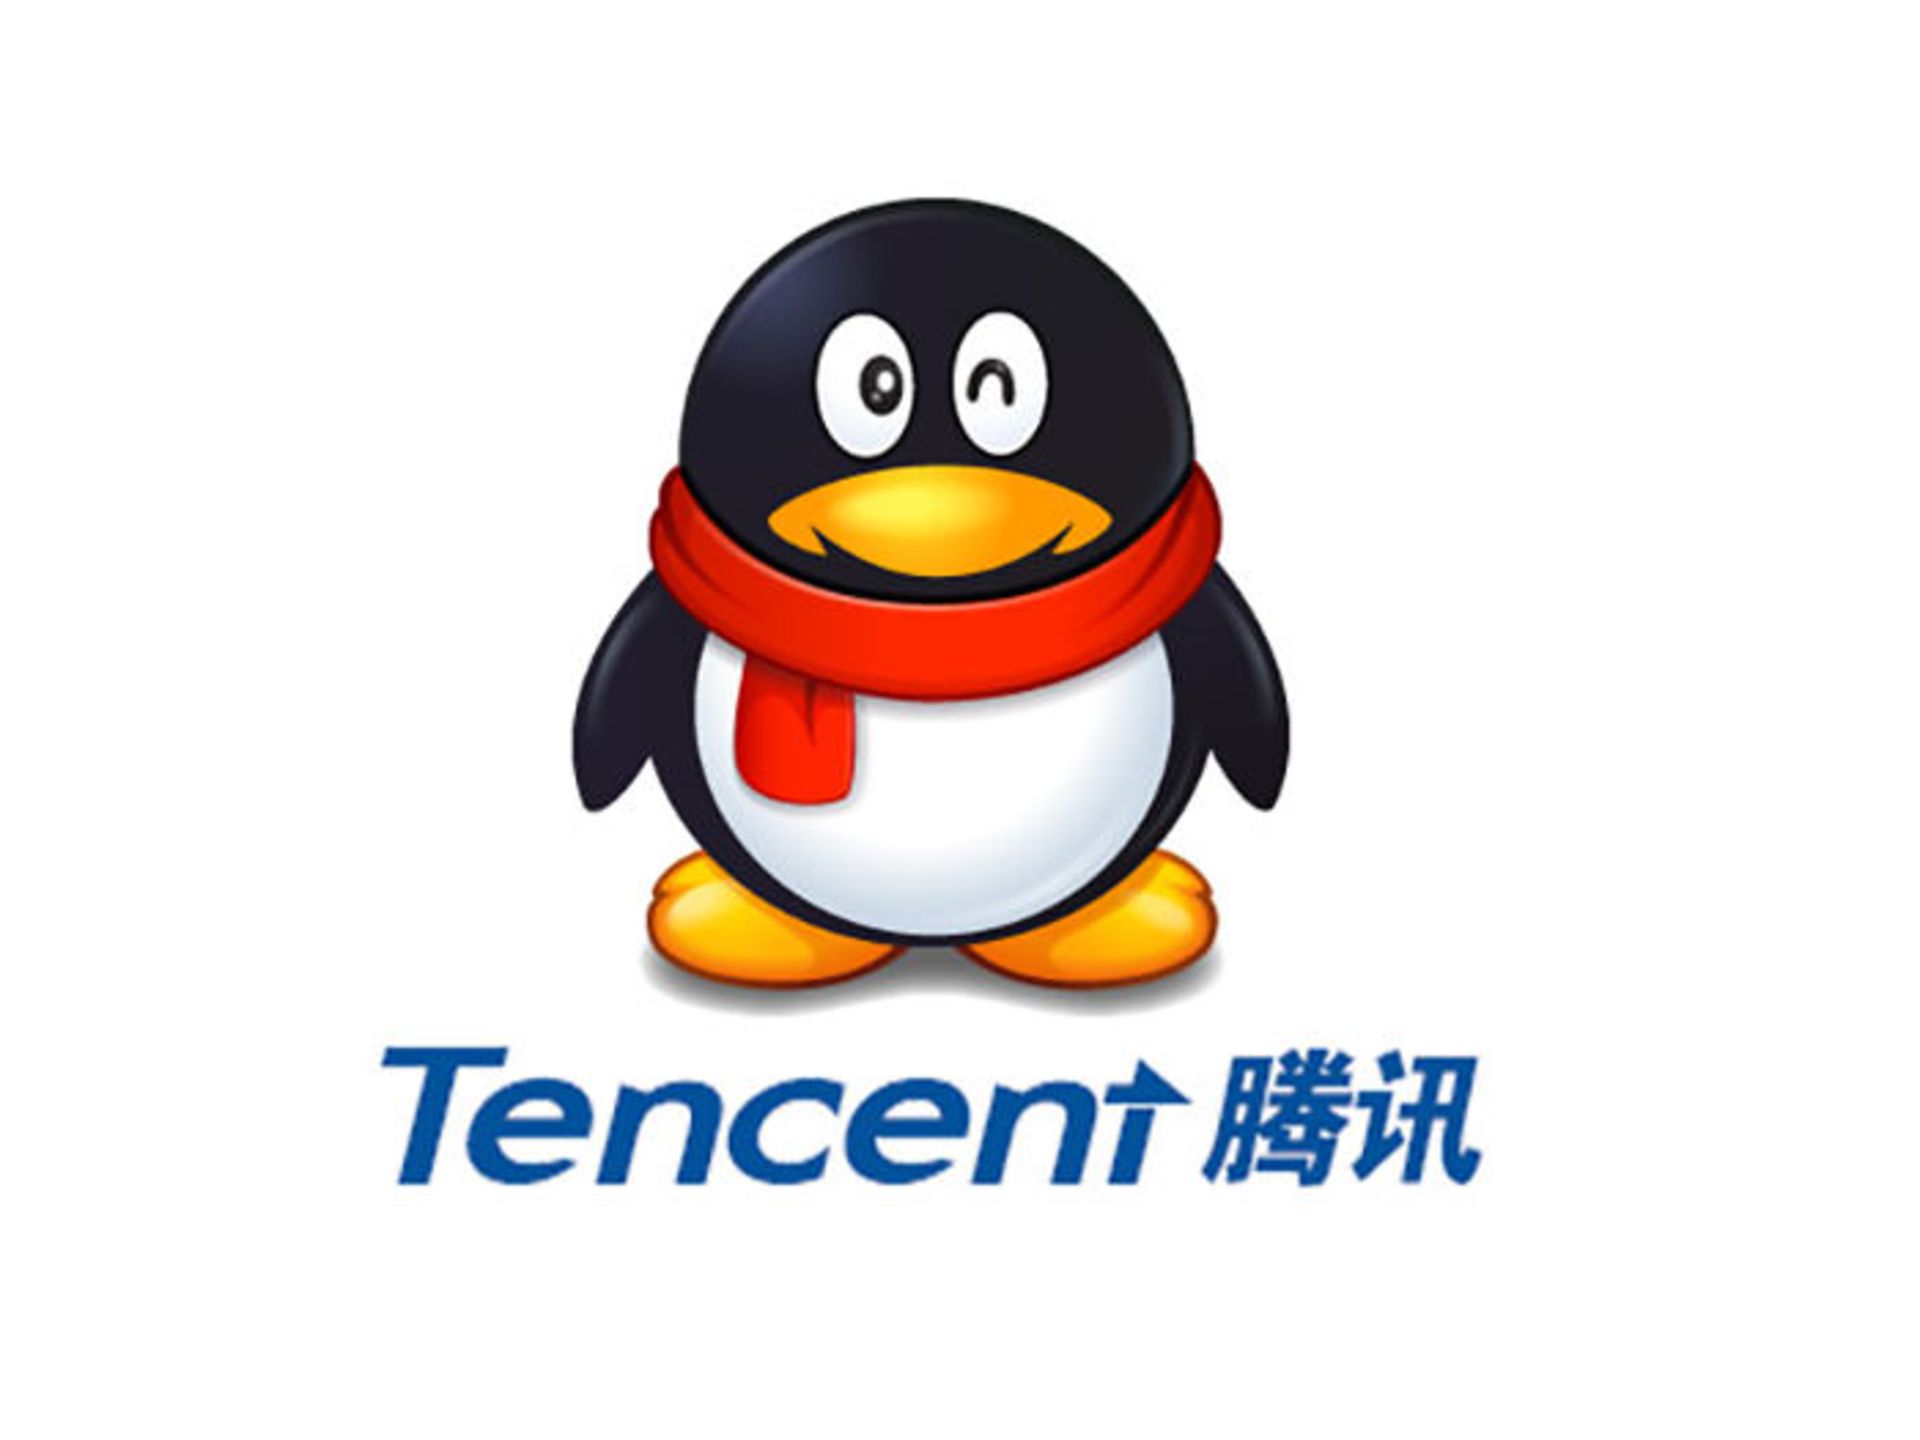 مرجع متخصصين ايران تنسنت / Tencent